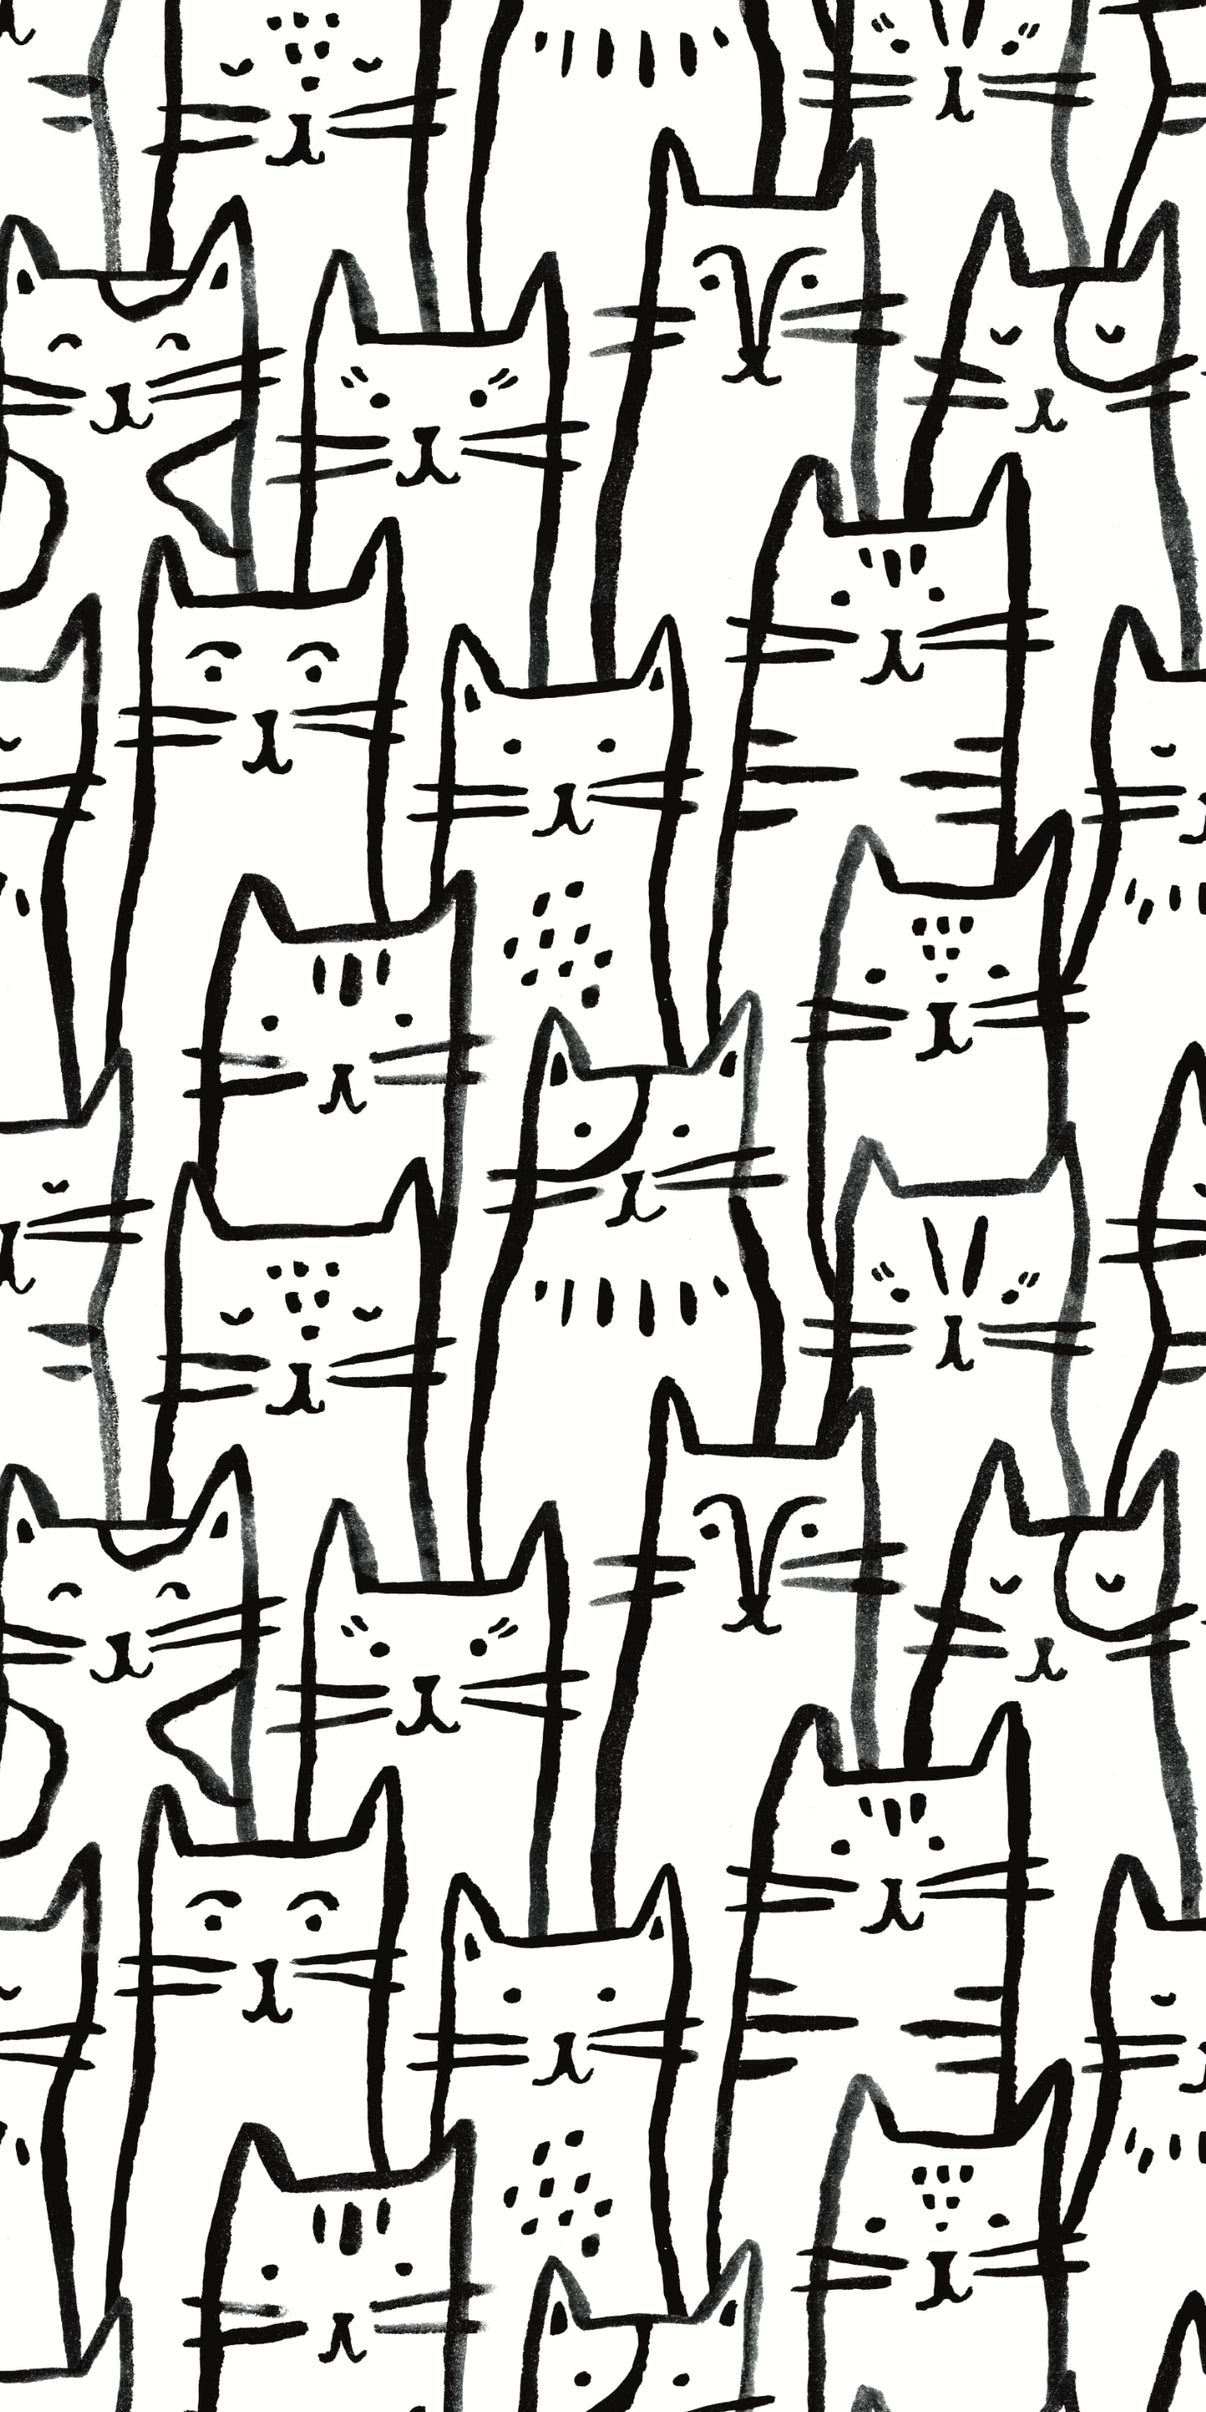 Smitten Kitten – Chasing Paper